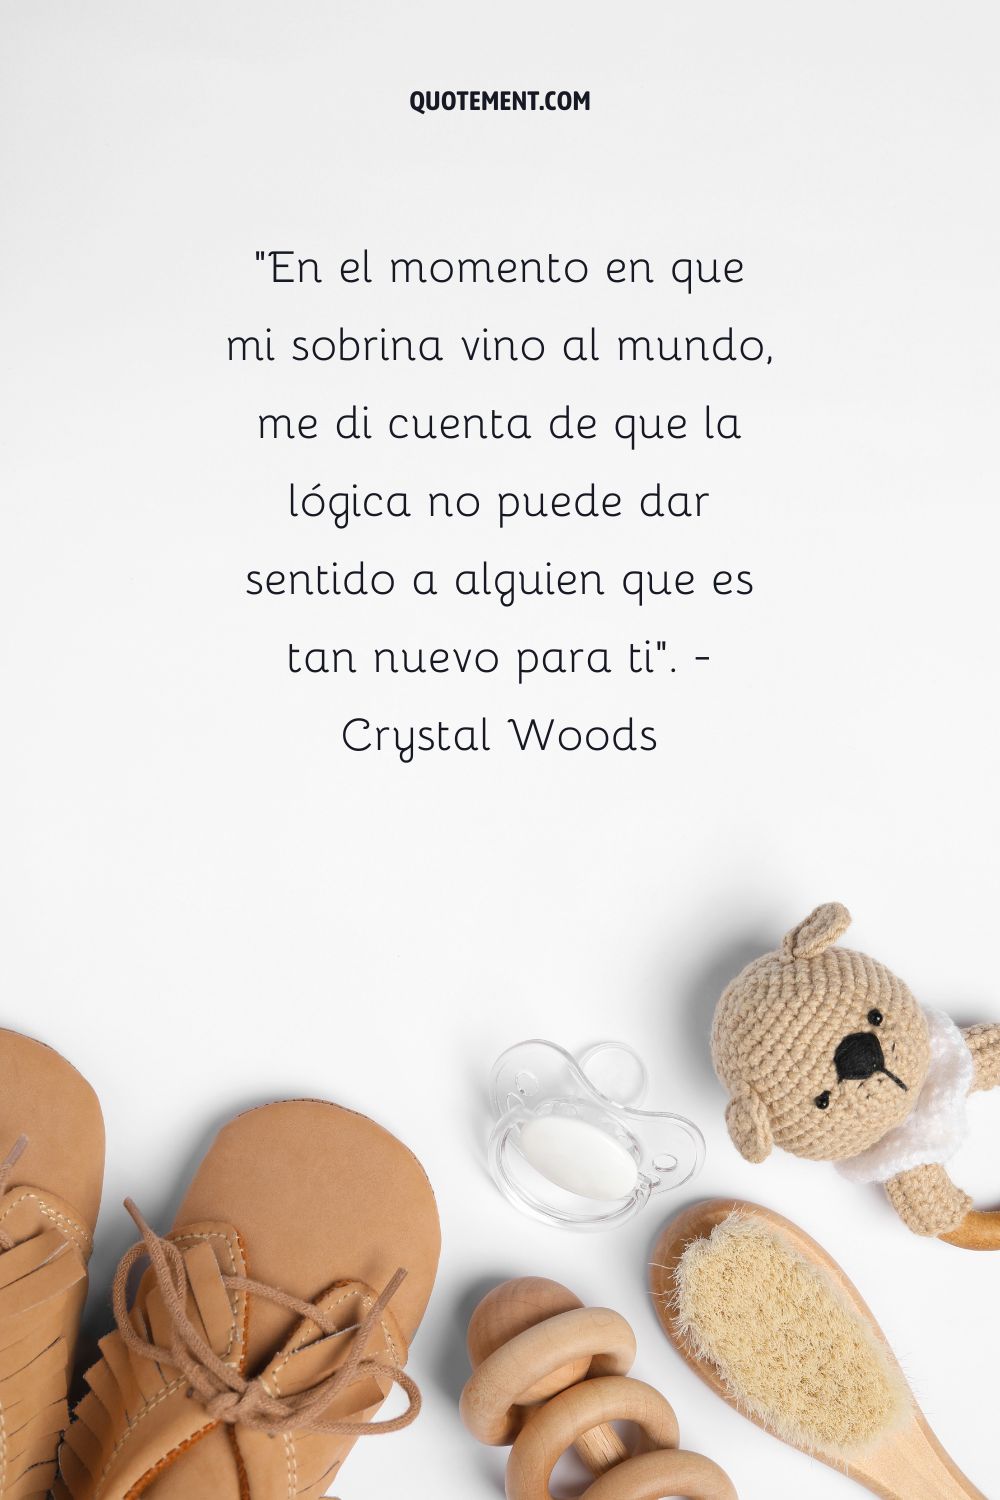 "En el momento en que mi sobrina vino al mundo, me di cuenta de que la lógica no puede dar sentido a alguien que es tan nuevo para ti". - Crystal Woods